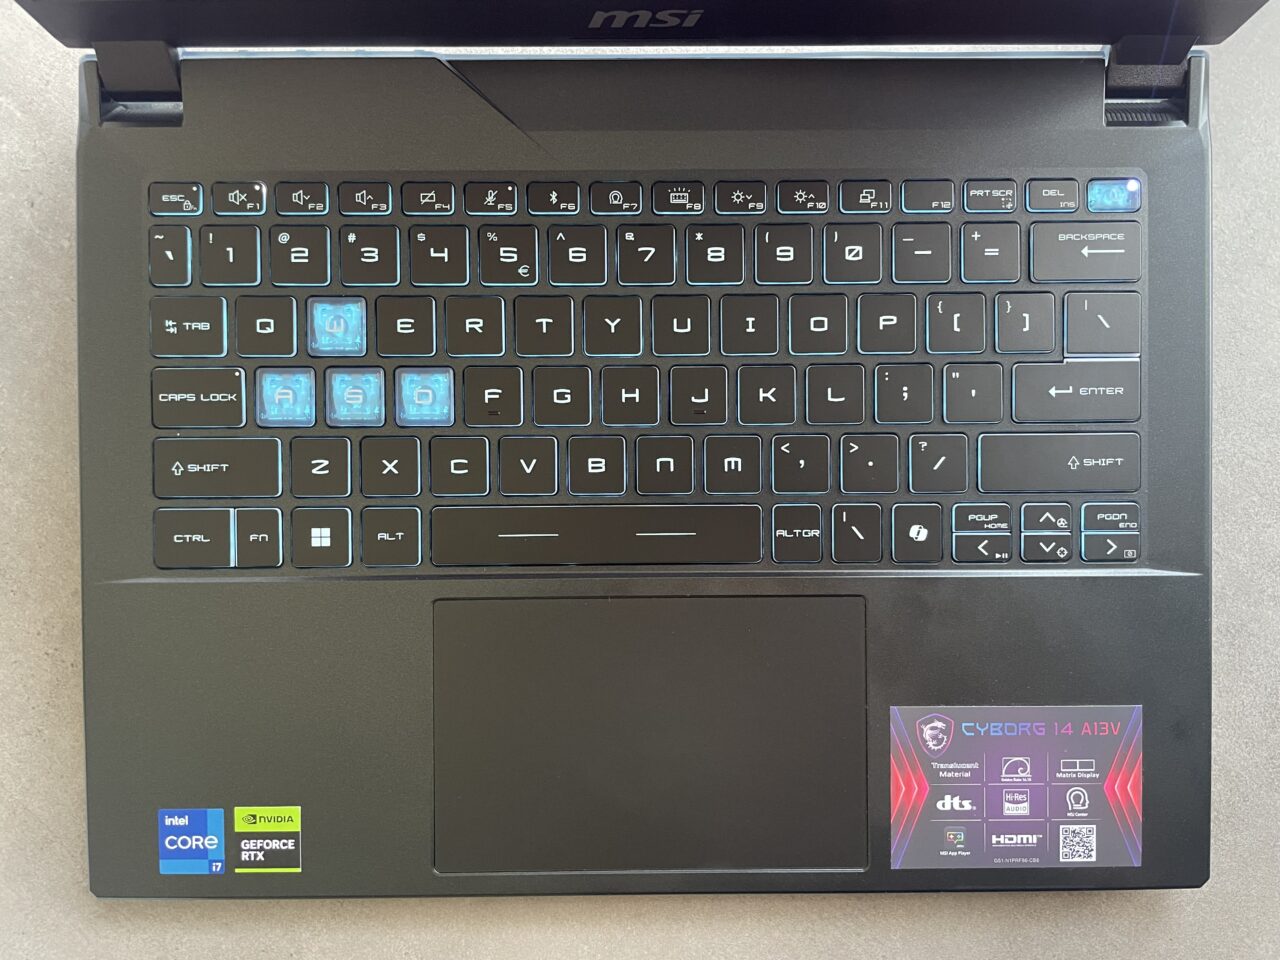 Klawiatura laptopa marki MSI z podświetlonymi klawiszami i naklejkami informacyjnymi o komponentach Intela i Nvidii oraz etykietą modelu CYBORG 14 A13V w dolnym prawym rogu.